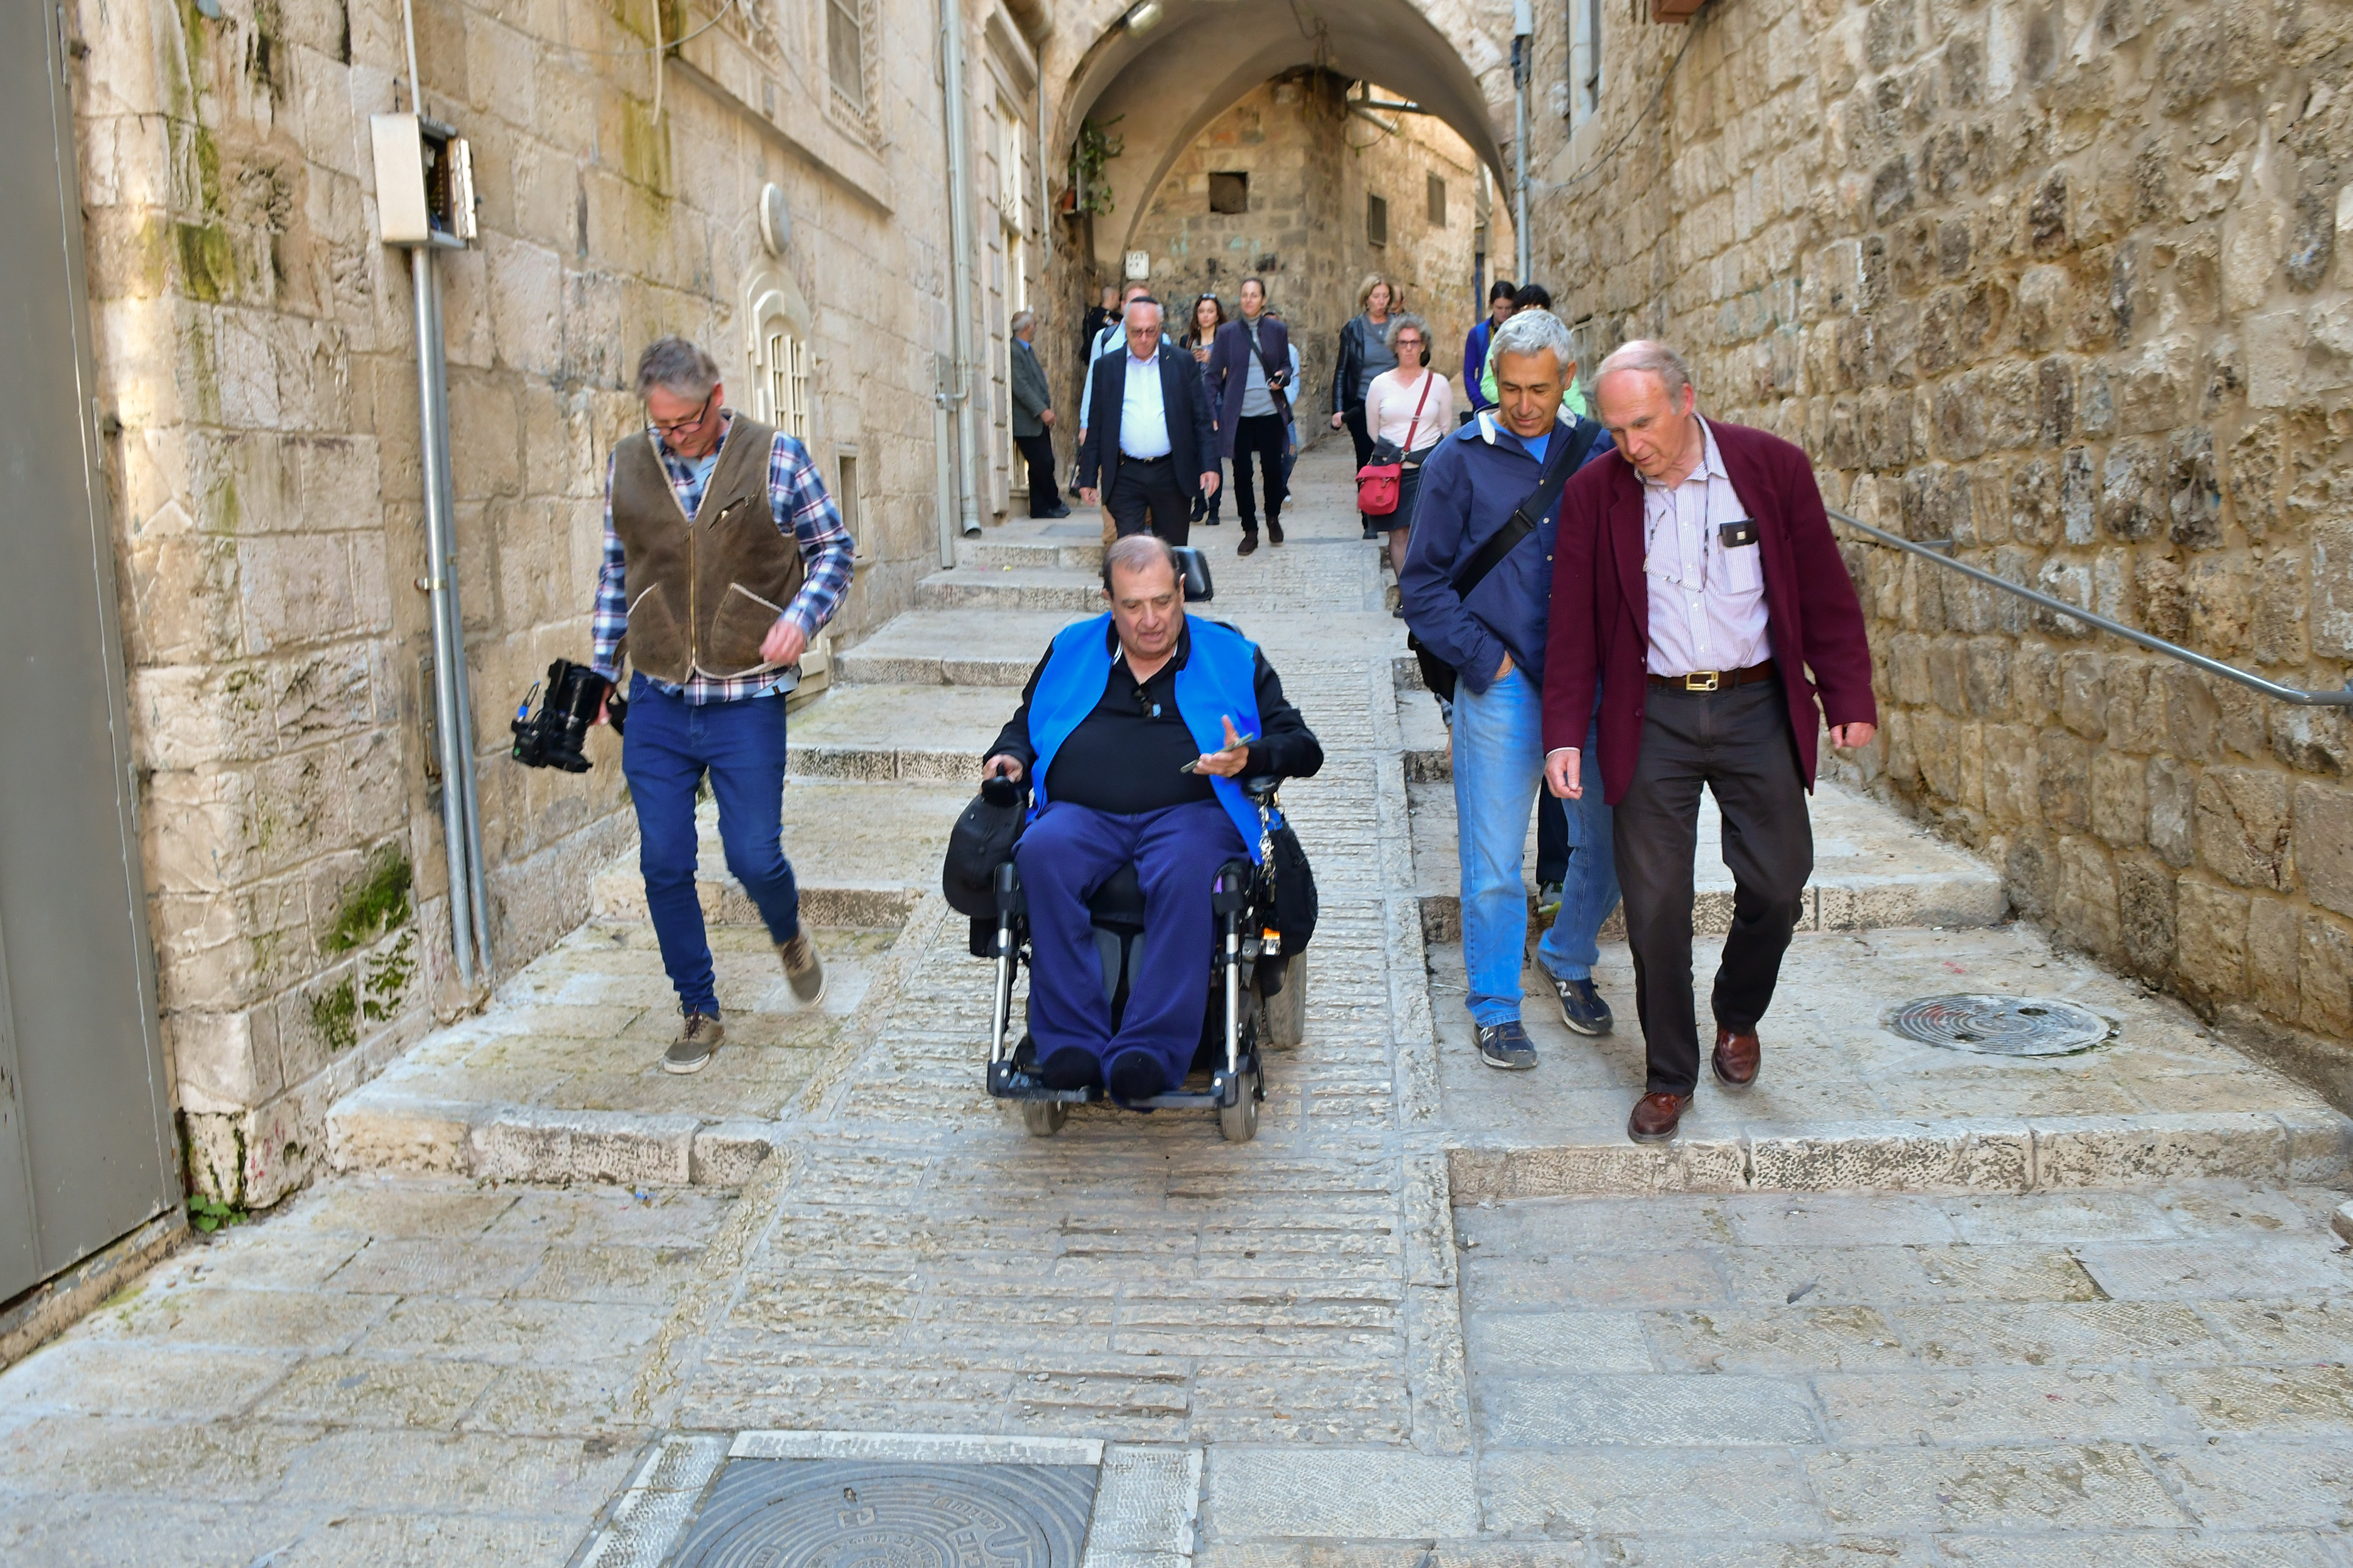 La Ciudad Vieja de Jerusalén, ahora más accesible para las personas con movilidad reducida y discapacidad visual